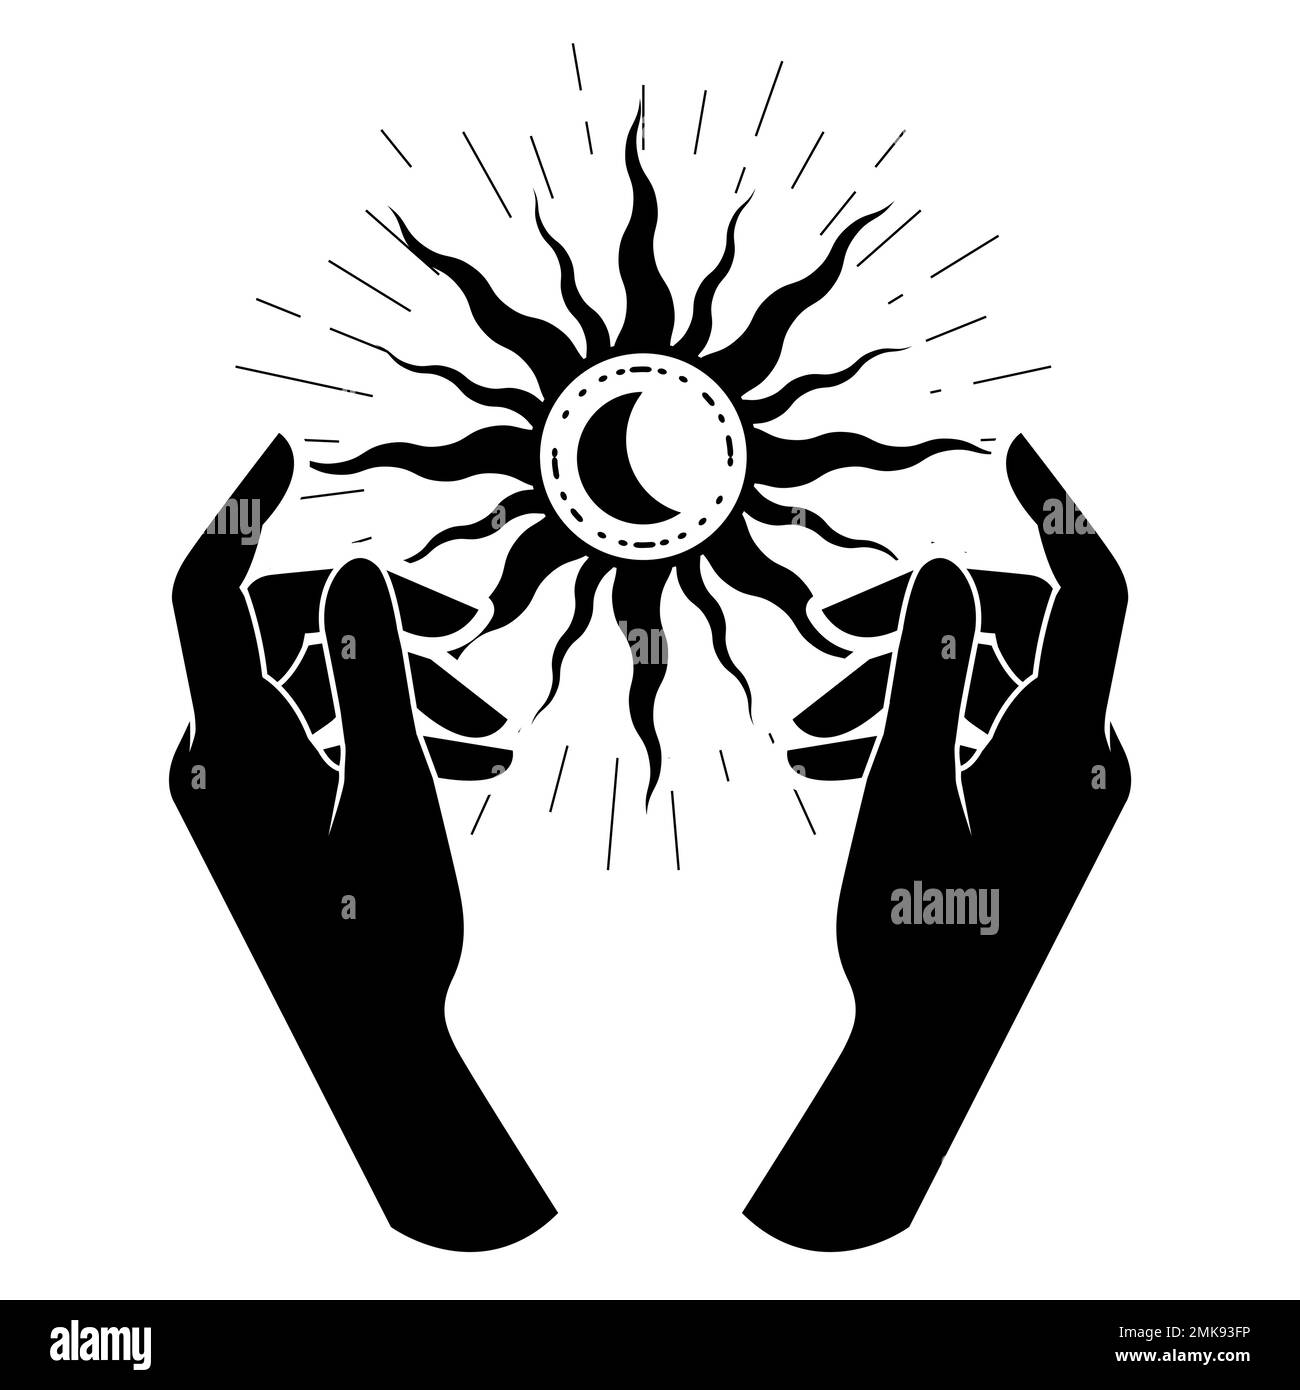 Hexenhände halten Sonne, schwarzer Stern mit Mond, Okkultismus und esoterische Praxis, mystische Zauber und Hexerei, Vektor Stock Vektor